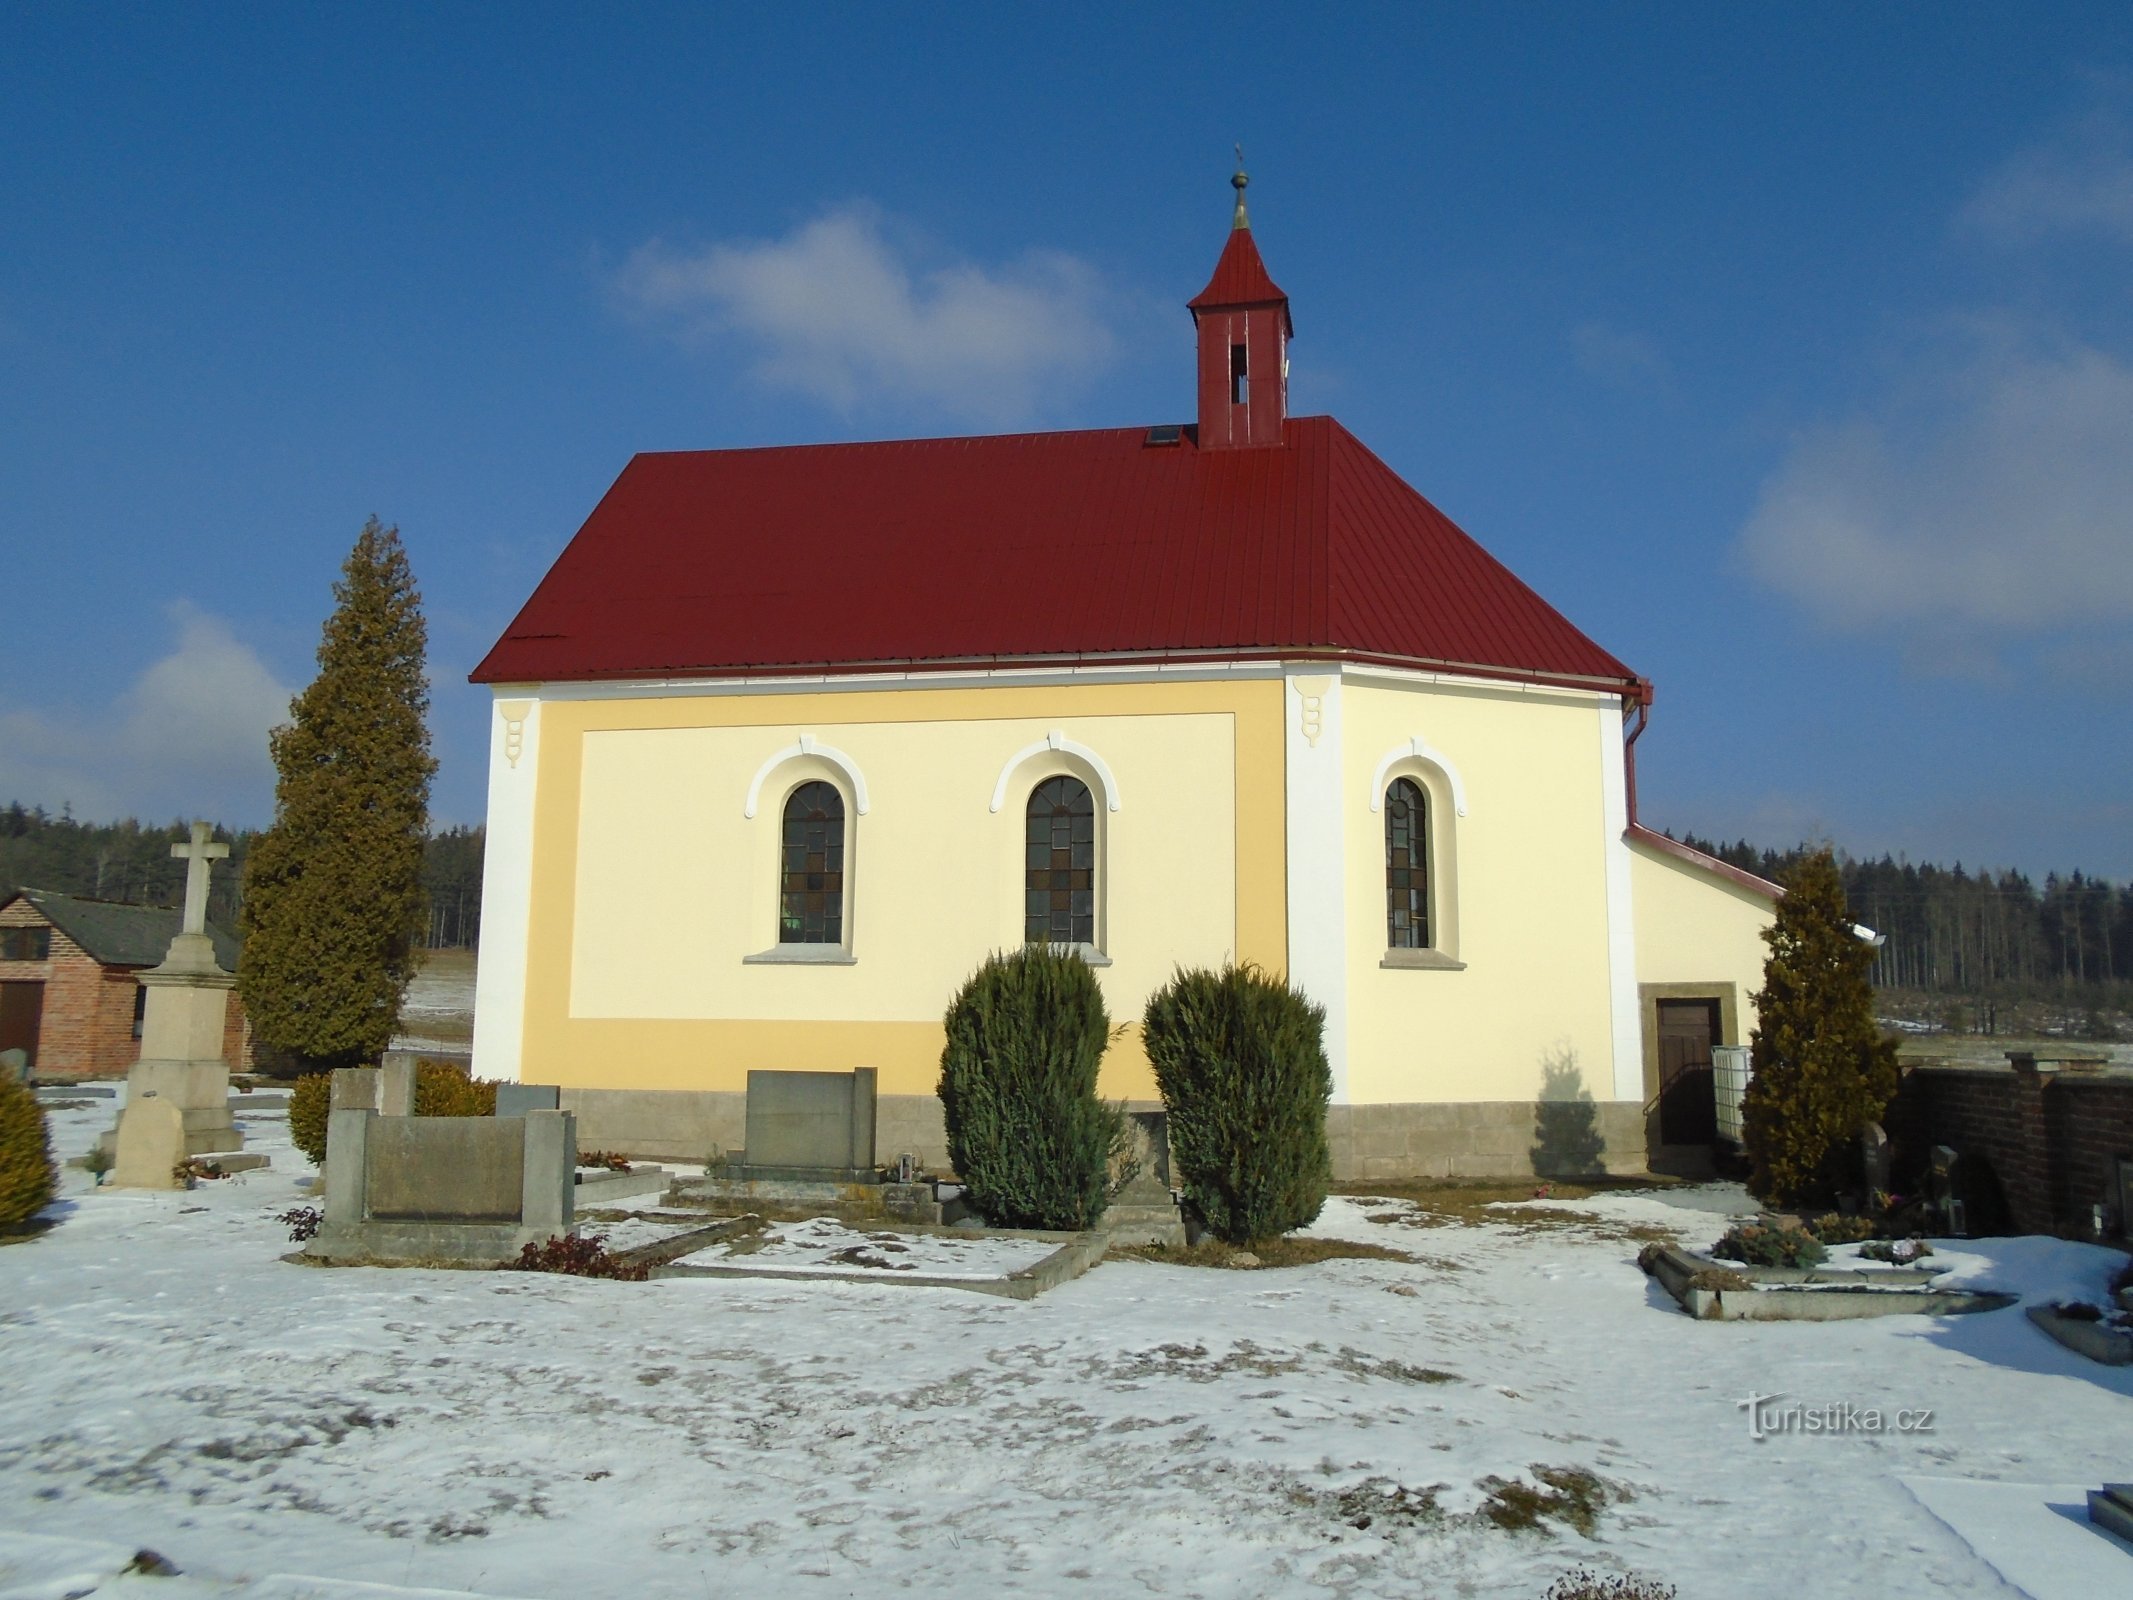 Kaplica cmentarna św. Józef (Proruby)